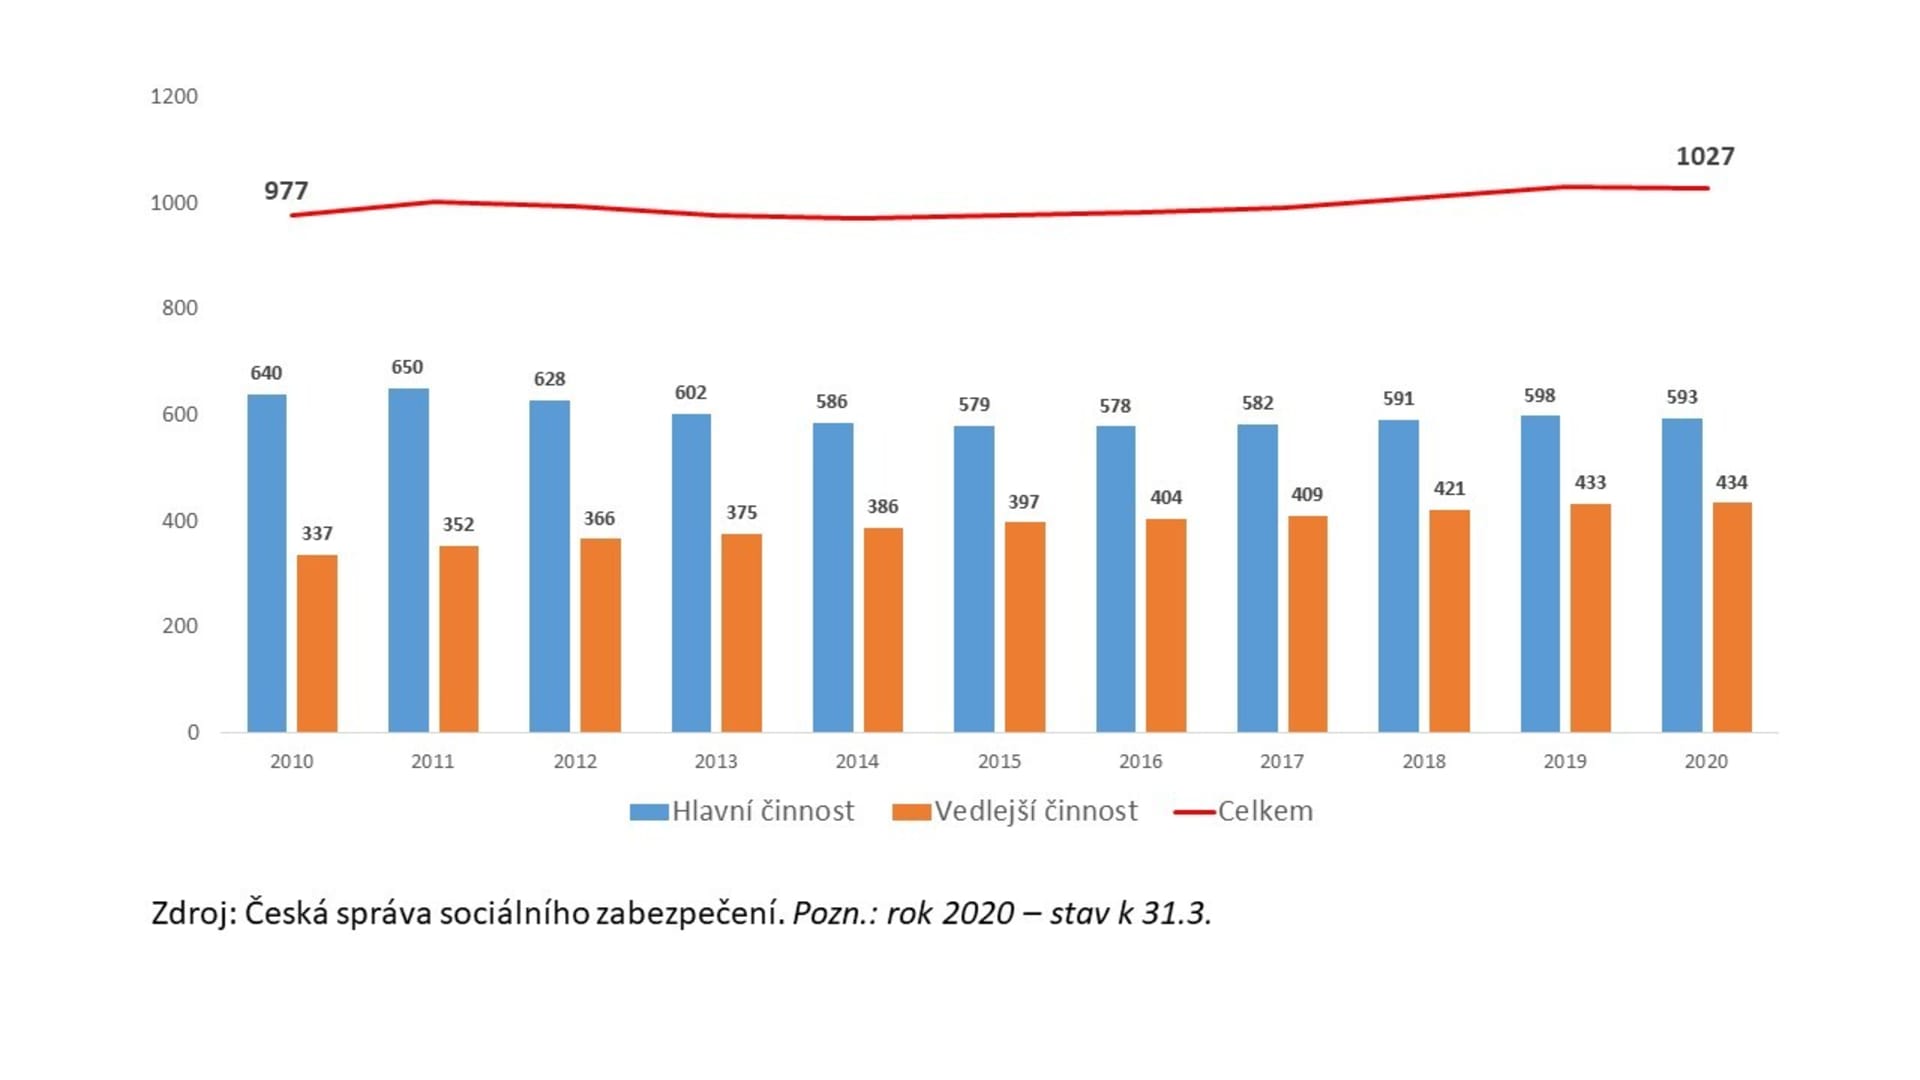 Počet osob samostatně výdělečně činných v České republice v letech 2010 až 2020 (v tisících)